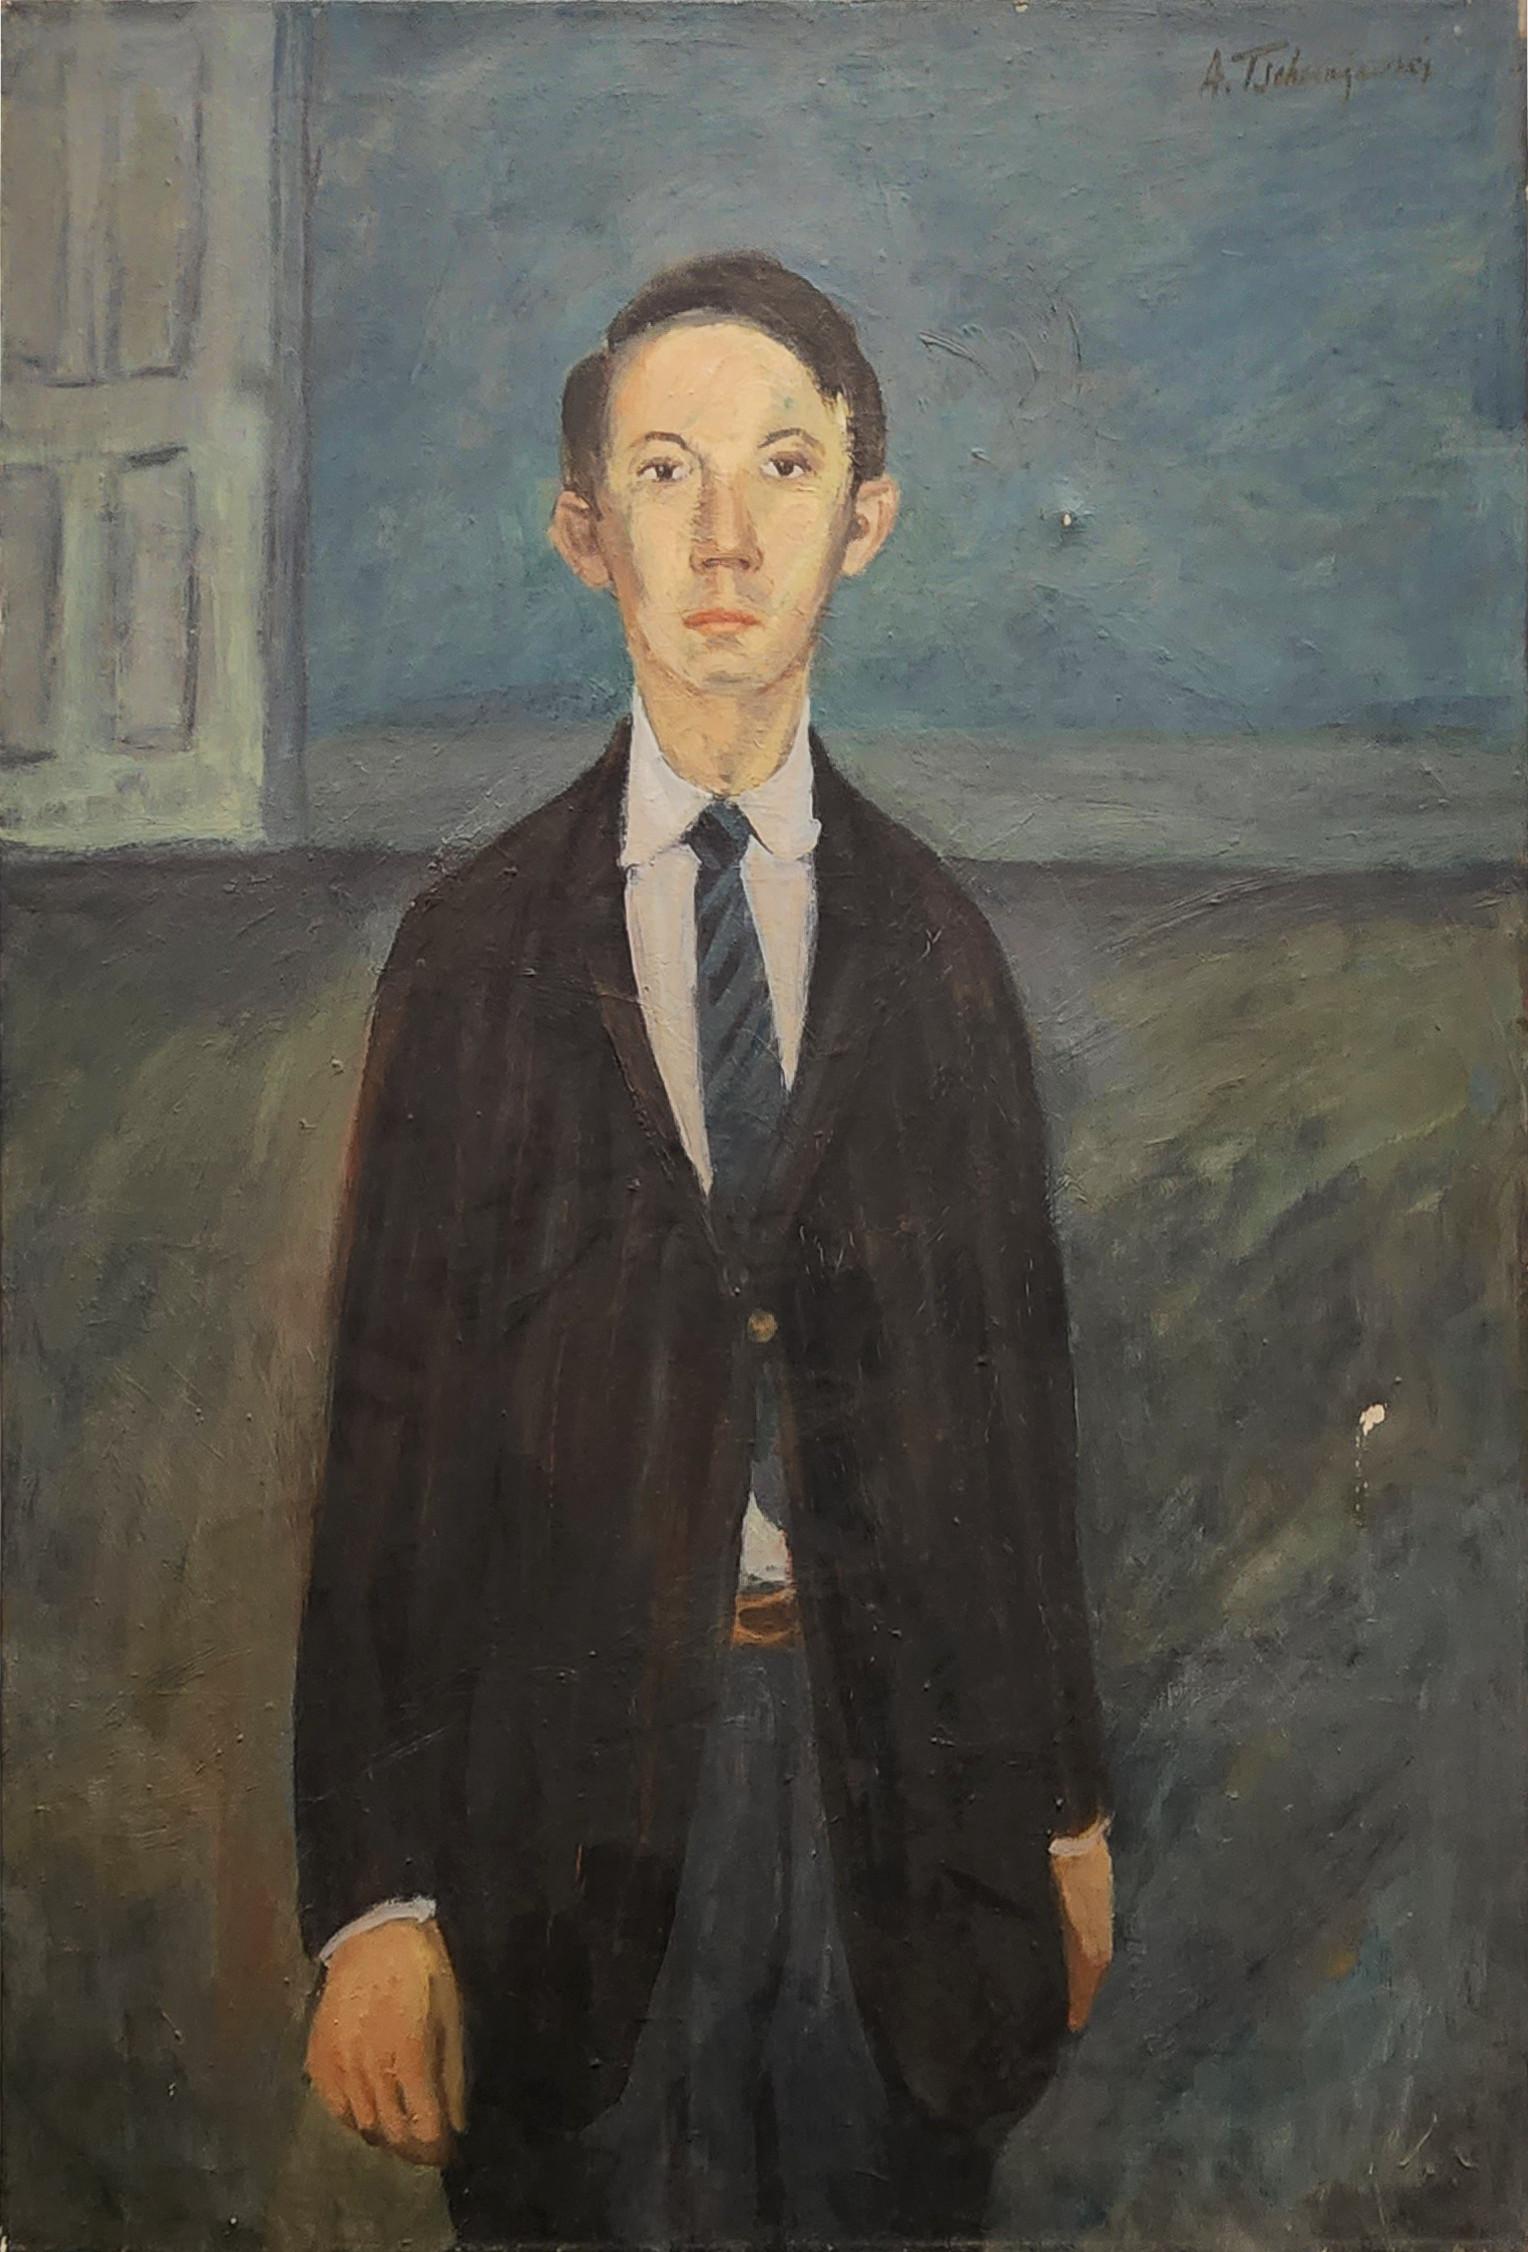 Self Portrait (American Post-War, Impressionist, Suite - Livraison gratuite aux États-Unis)